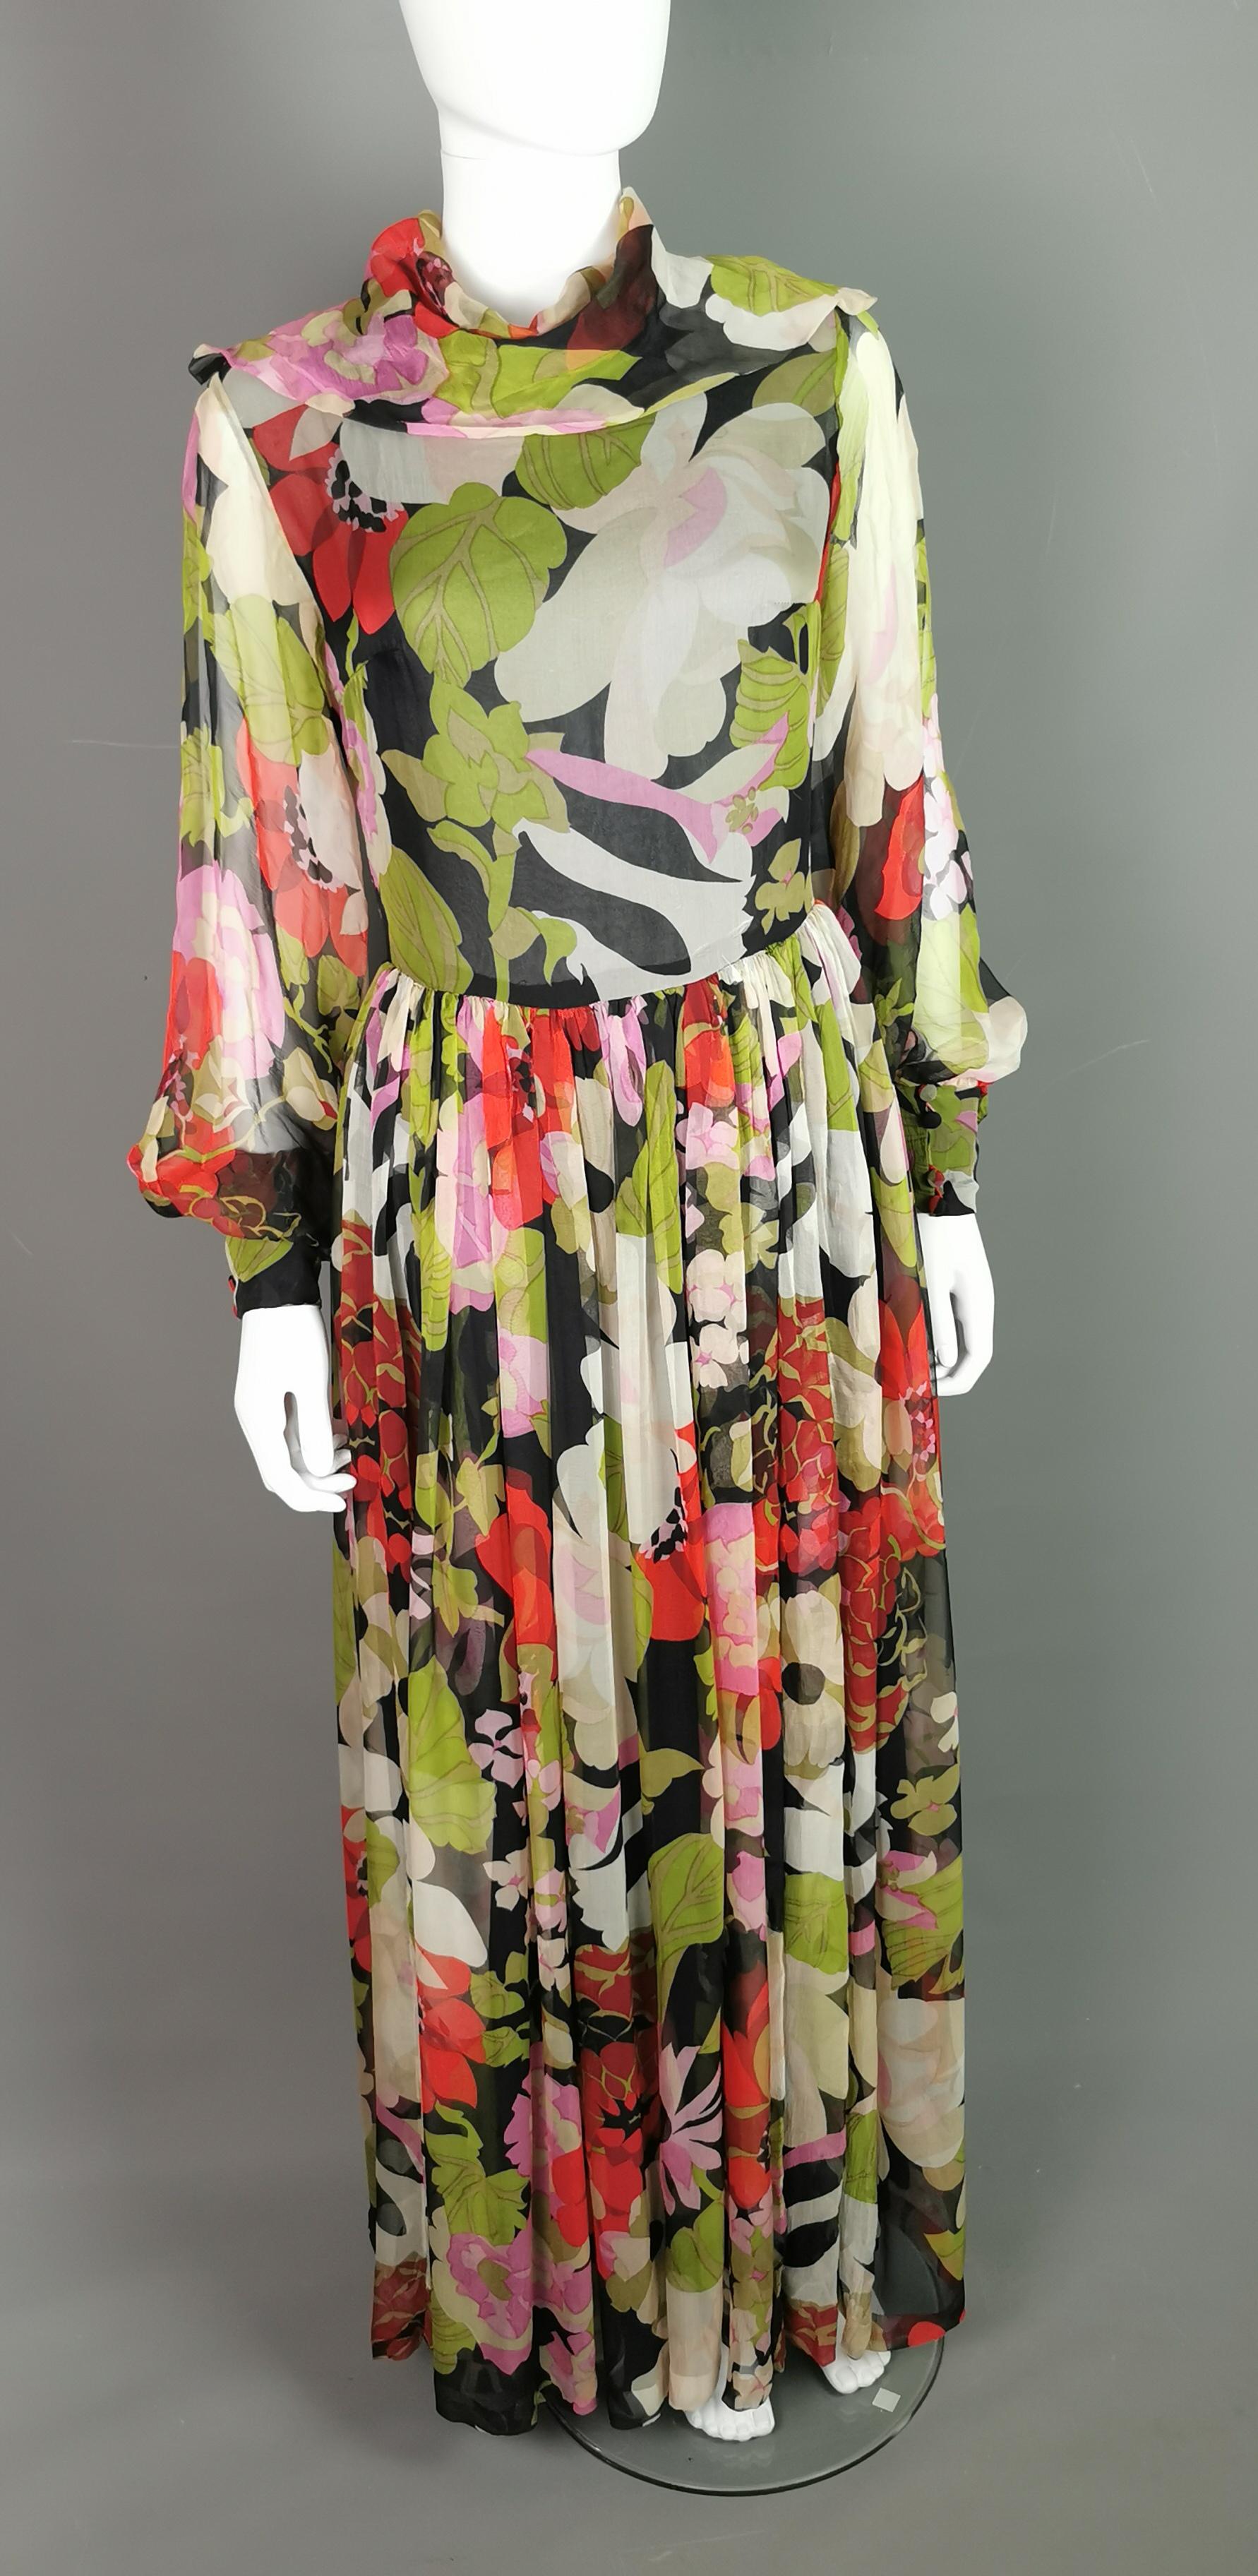 La plus belle robe longue florale vintage des années 1970.

La robe est confectionnée dans une Georgette de soie douce et transparente, imprimée d'un motif floral sur fond sombre. Elle présente un décolleté en forme de capuchon et de superbes